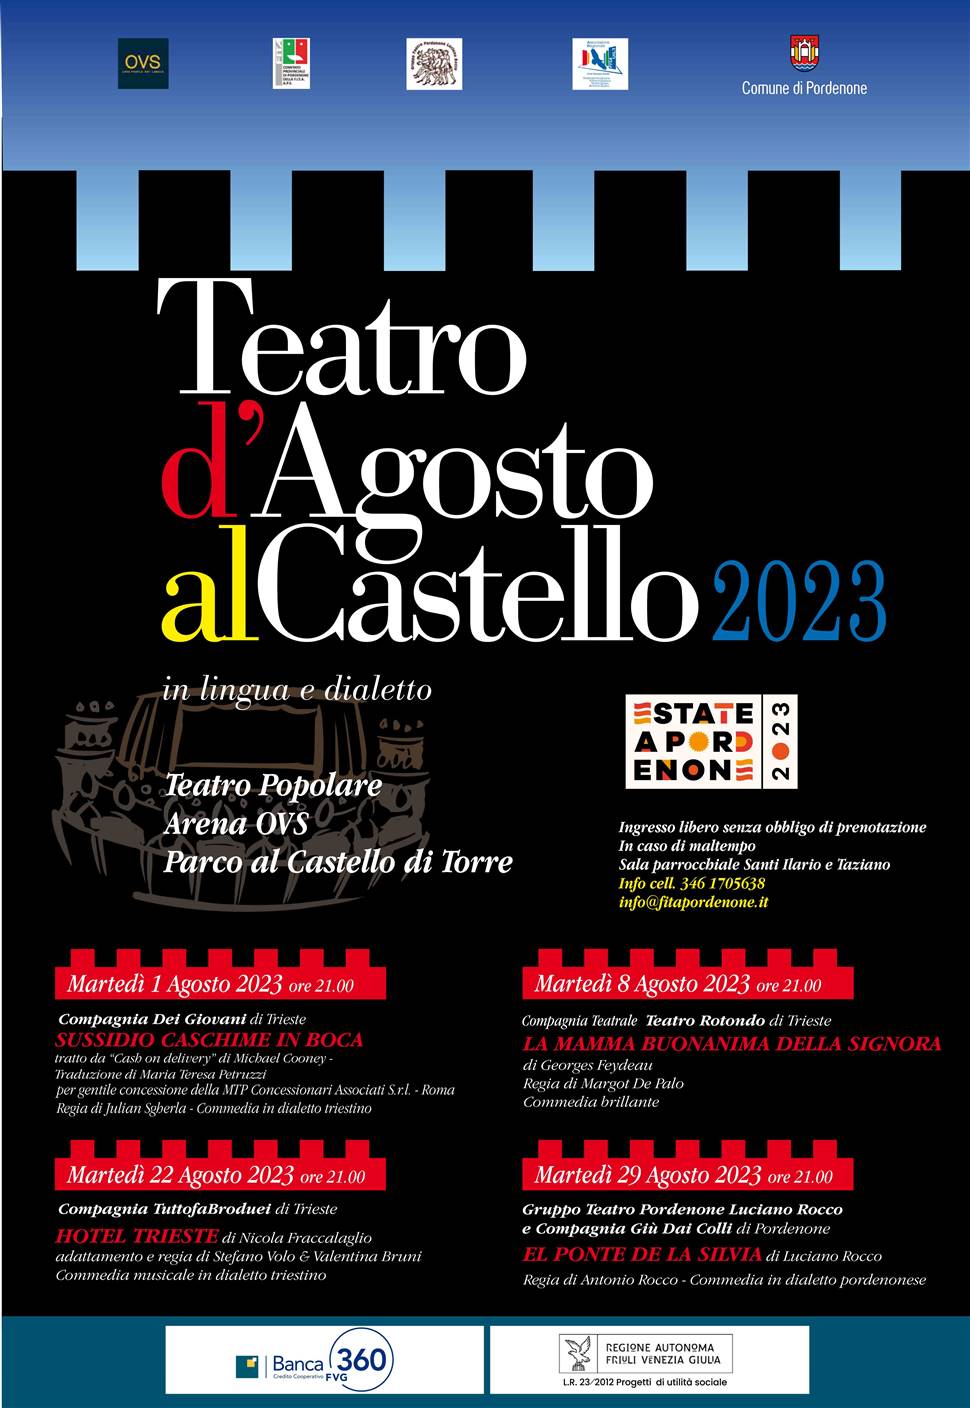 TEATRO D'AGOSTO AL CASTELLO 2023 Teatro popolare al parco del castello in lingua e dialetto